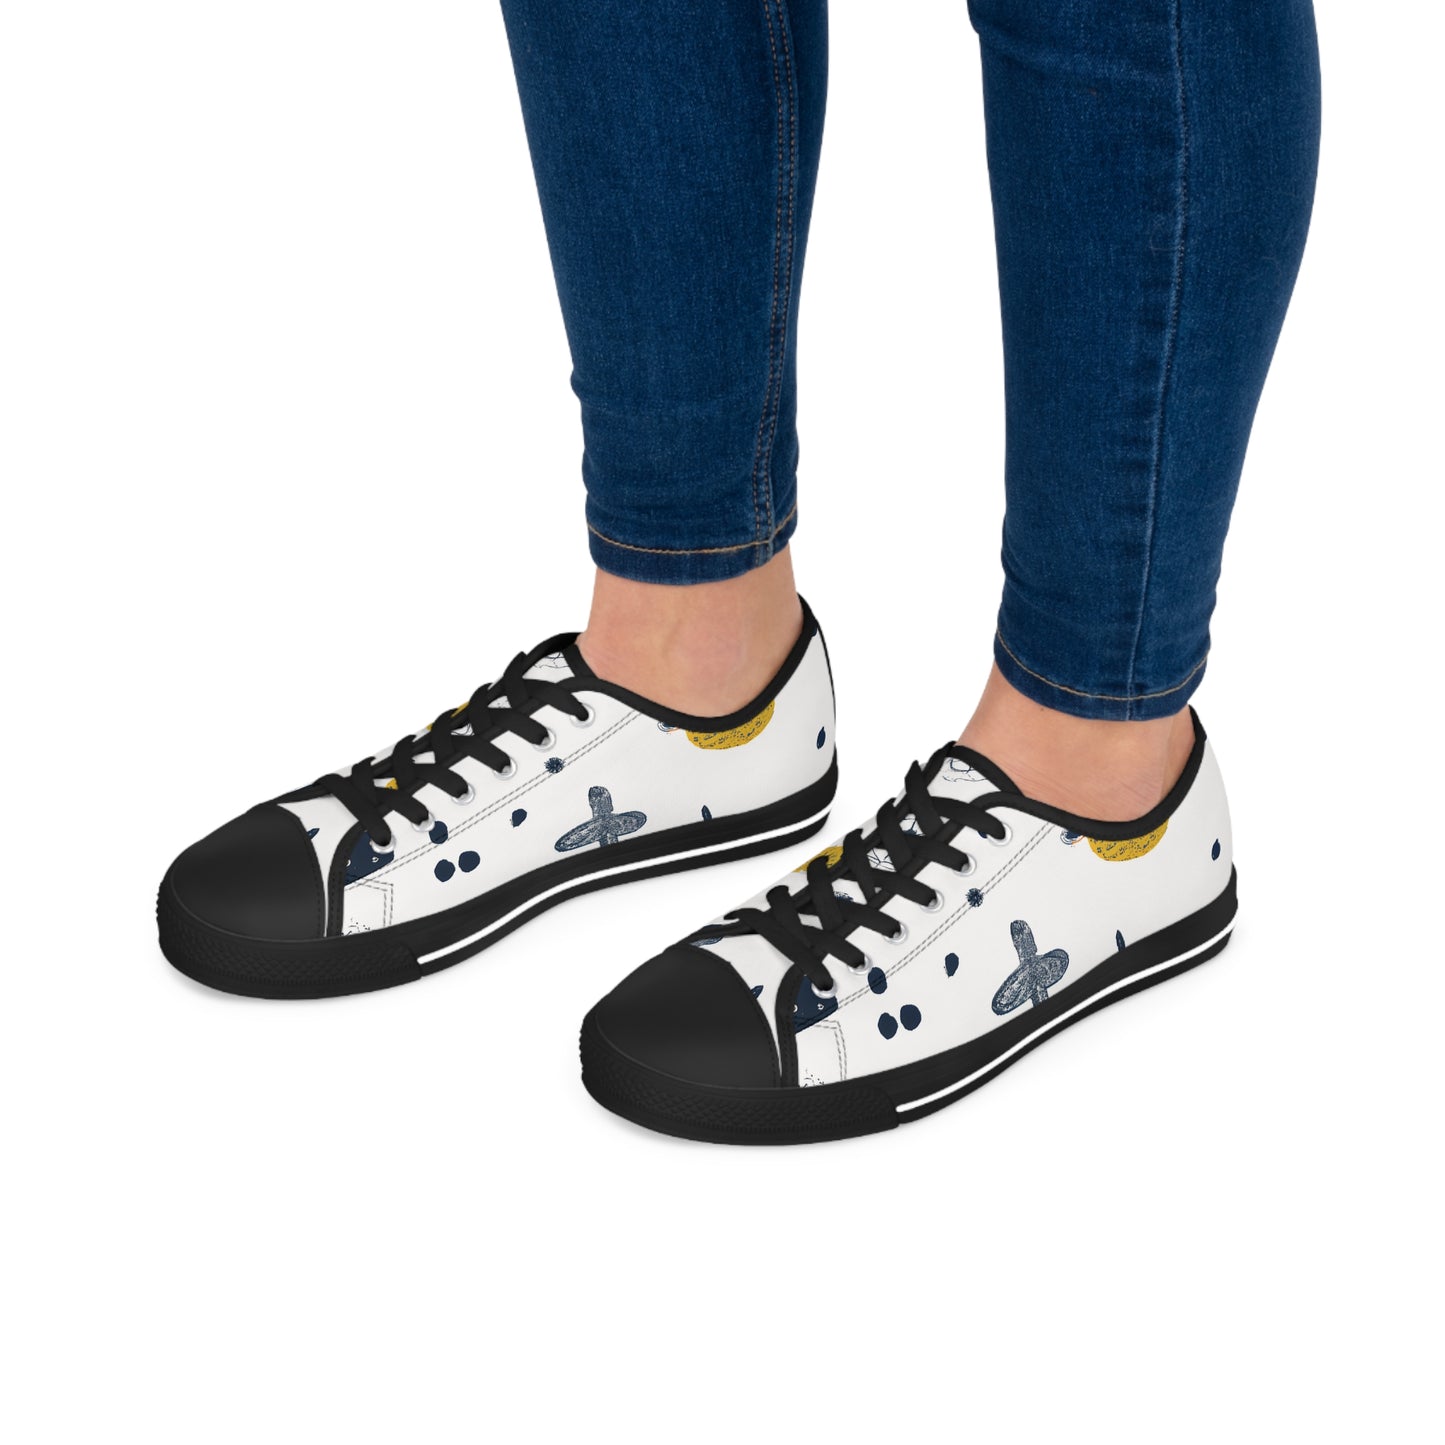 Gestura Winston - Women's Low-Top Sneakers